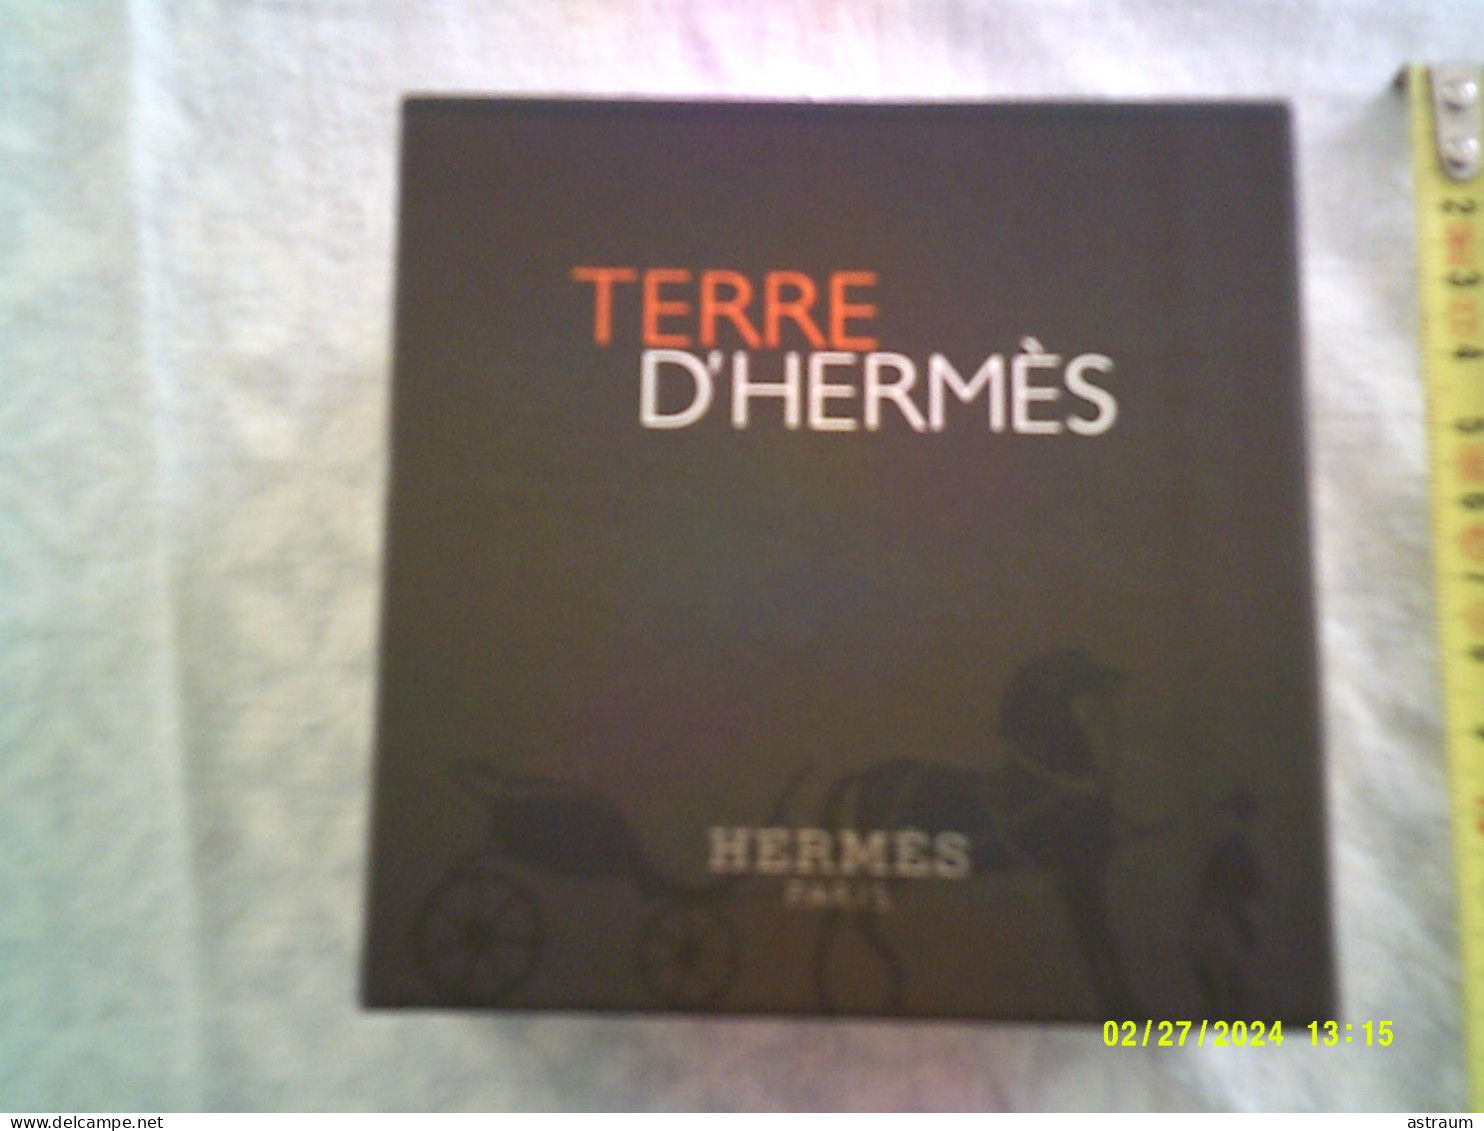 Coffret 2 Miniature Vaporisateur Parfum Hermes - EDT - Terre D'hermes Plein 12,5ml + Tube Emulsion Apres Rasage 15ml - Miniaturen Flesjes Heer (met Doos)